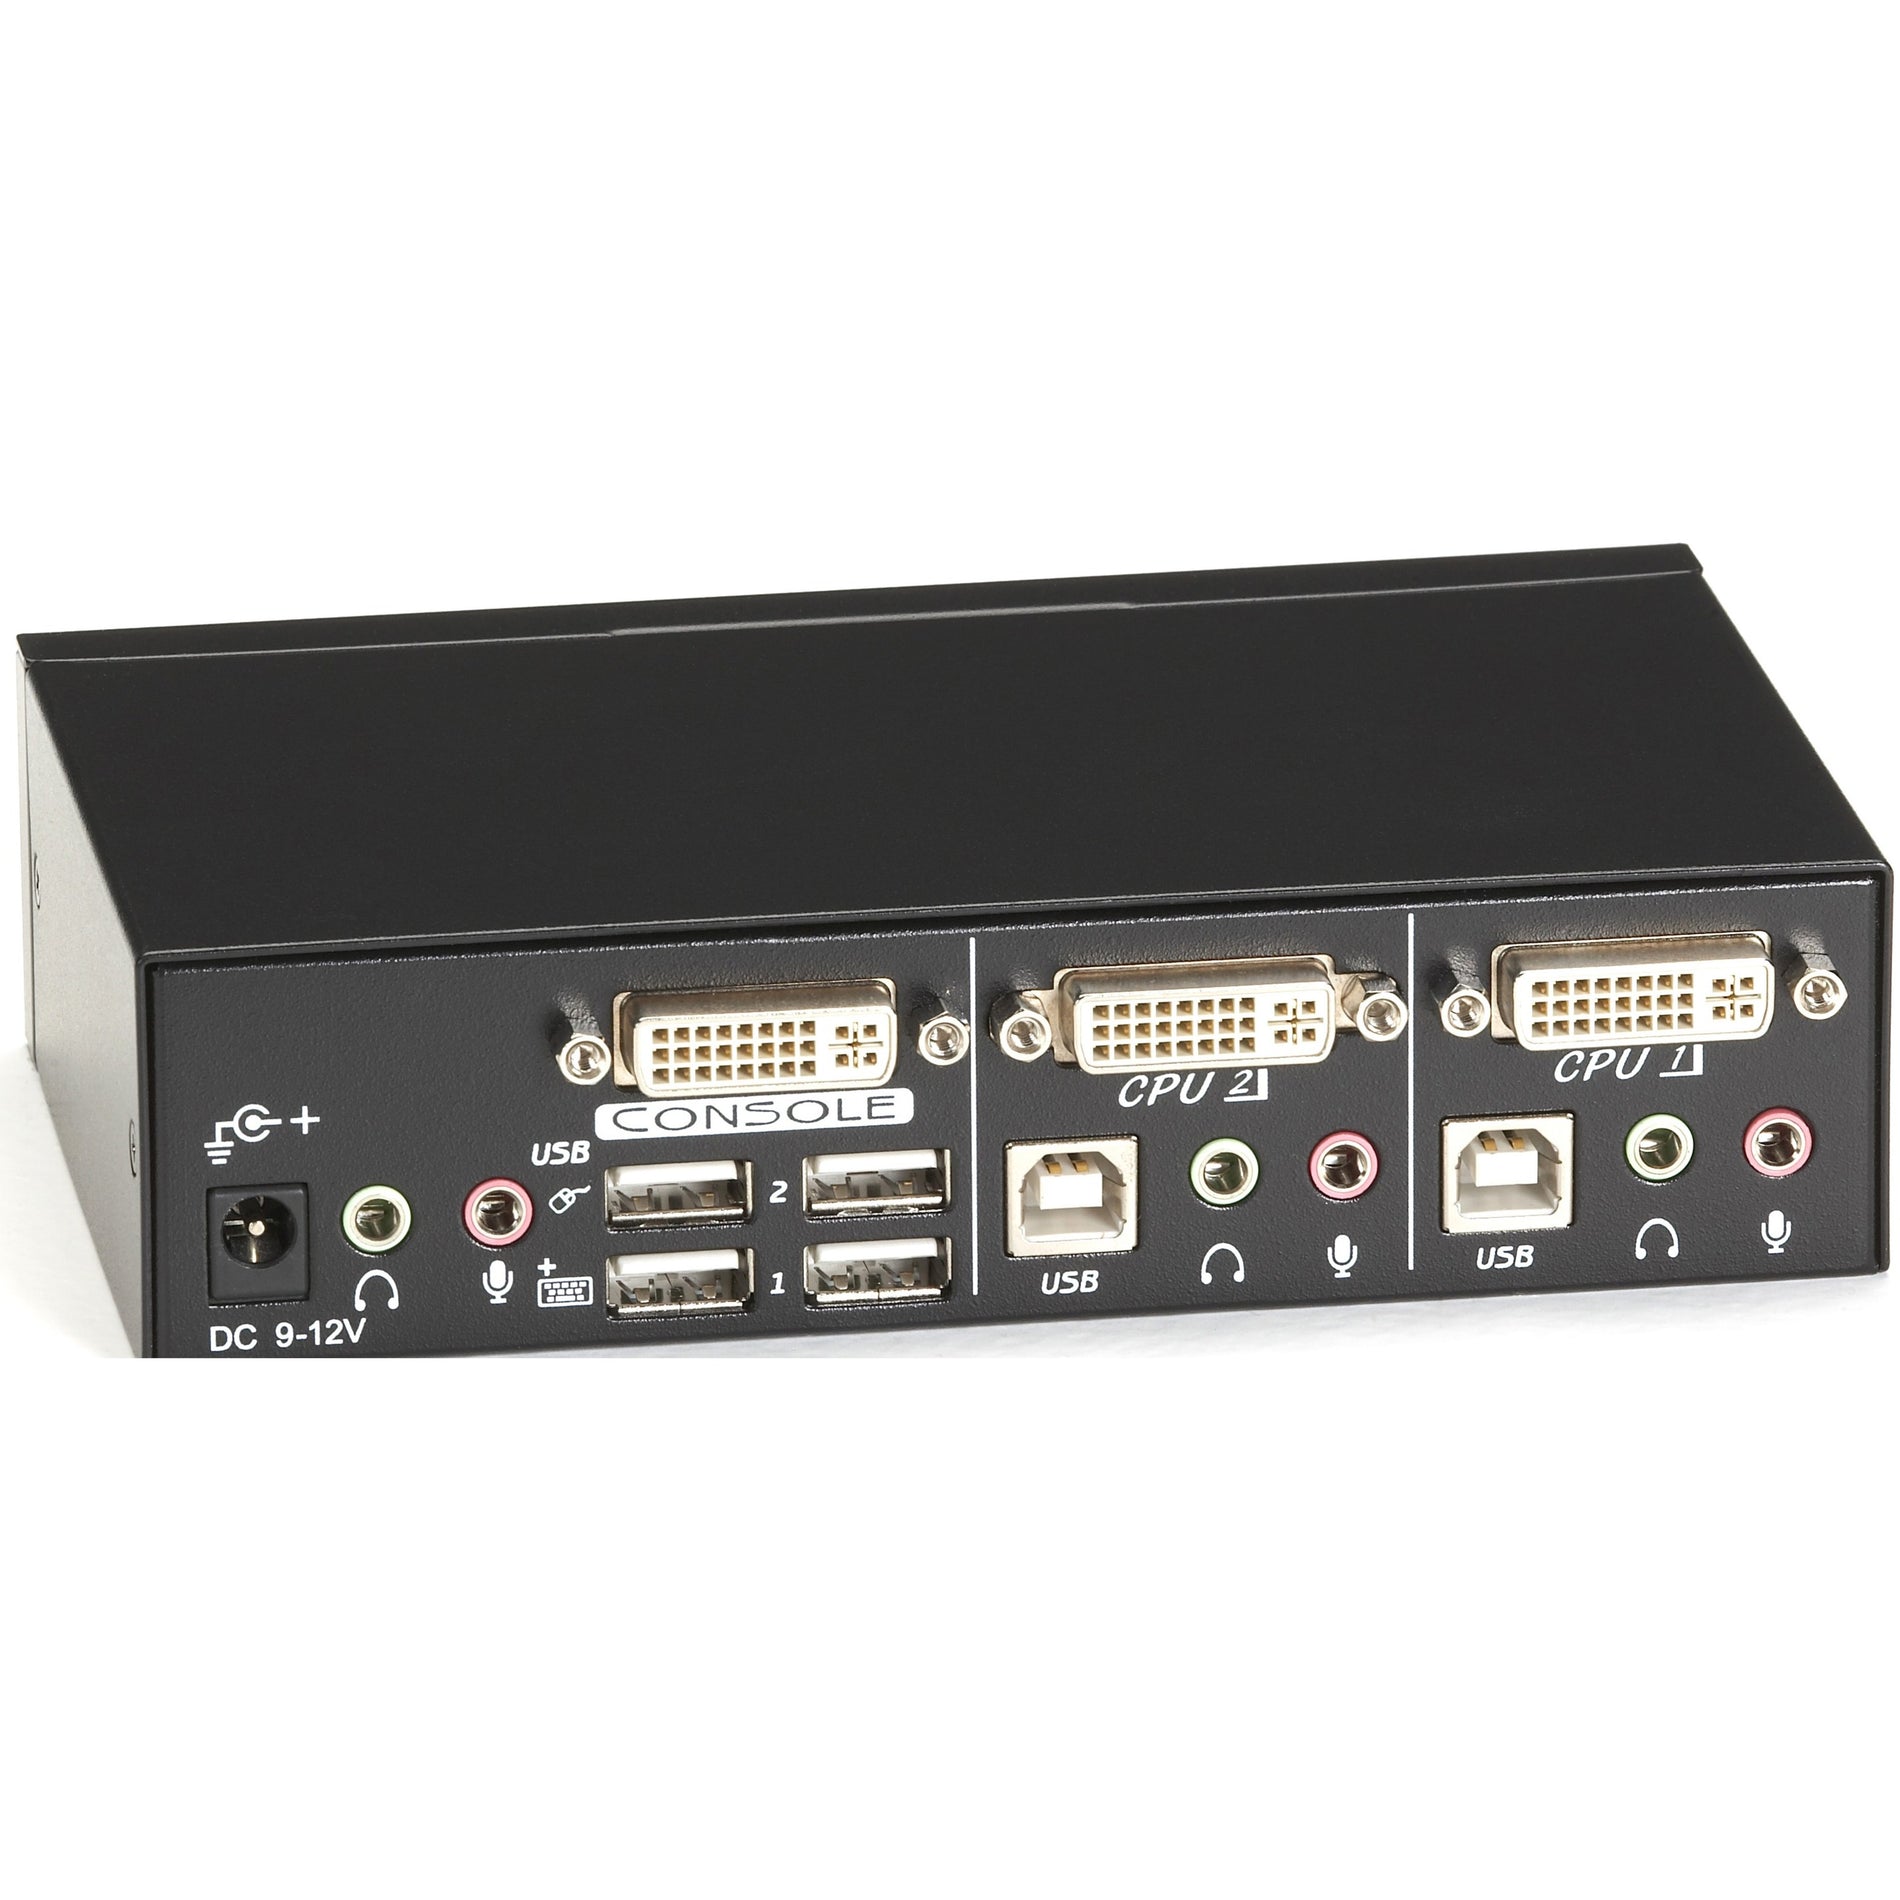 Schwarz Kasten KV9612A ServSwitch DT DVI 2-Port mit Emuliert USB Tastatur/Maus WUXGA 1920 x 1200 1 Jahr Garantie